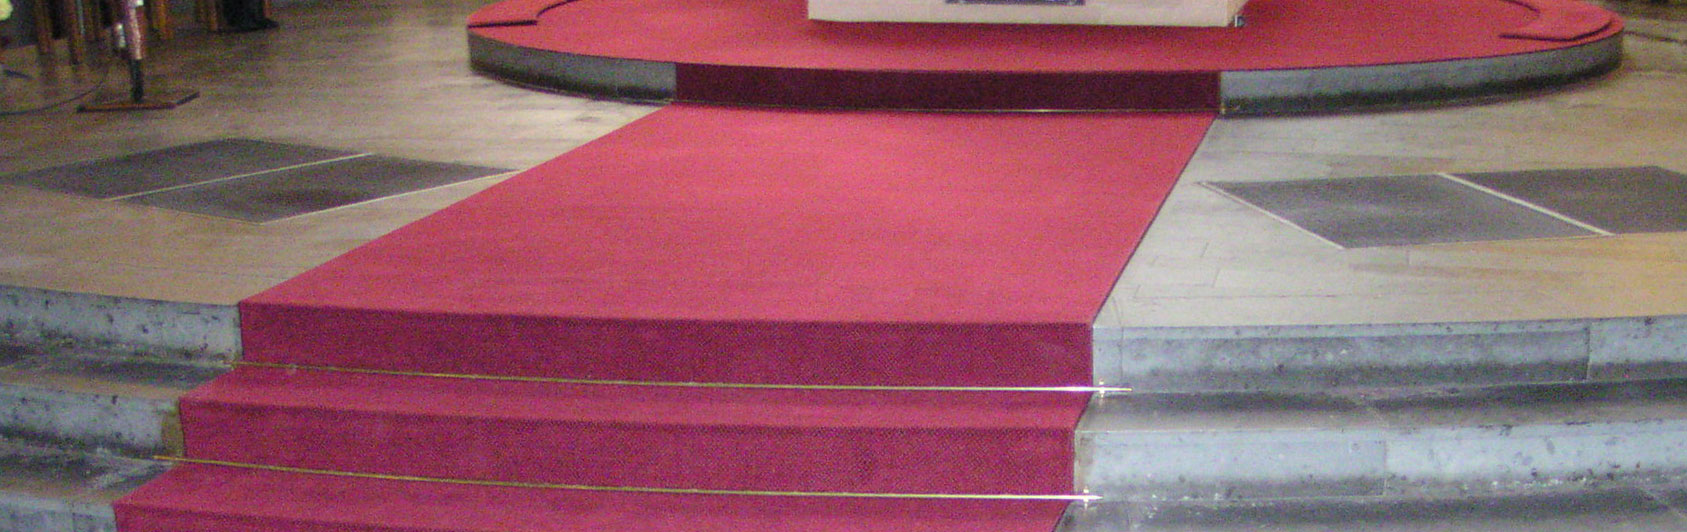 church carpet velvet round shape